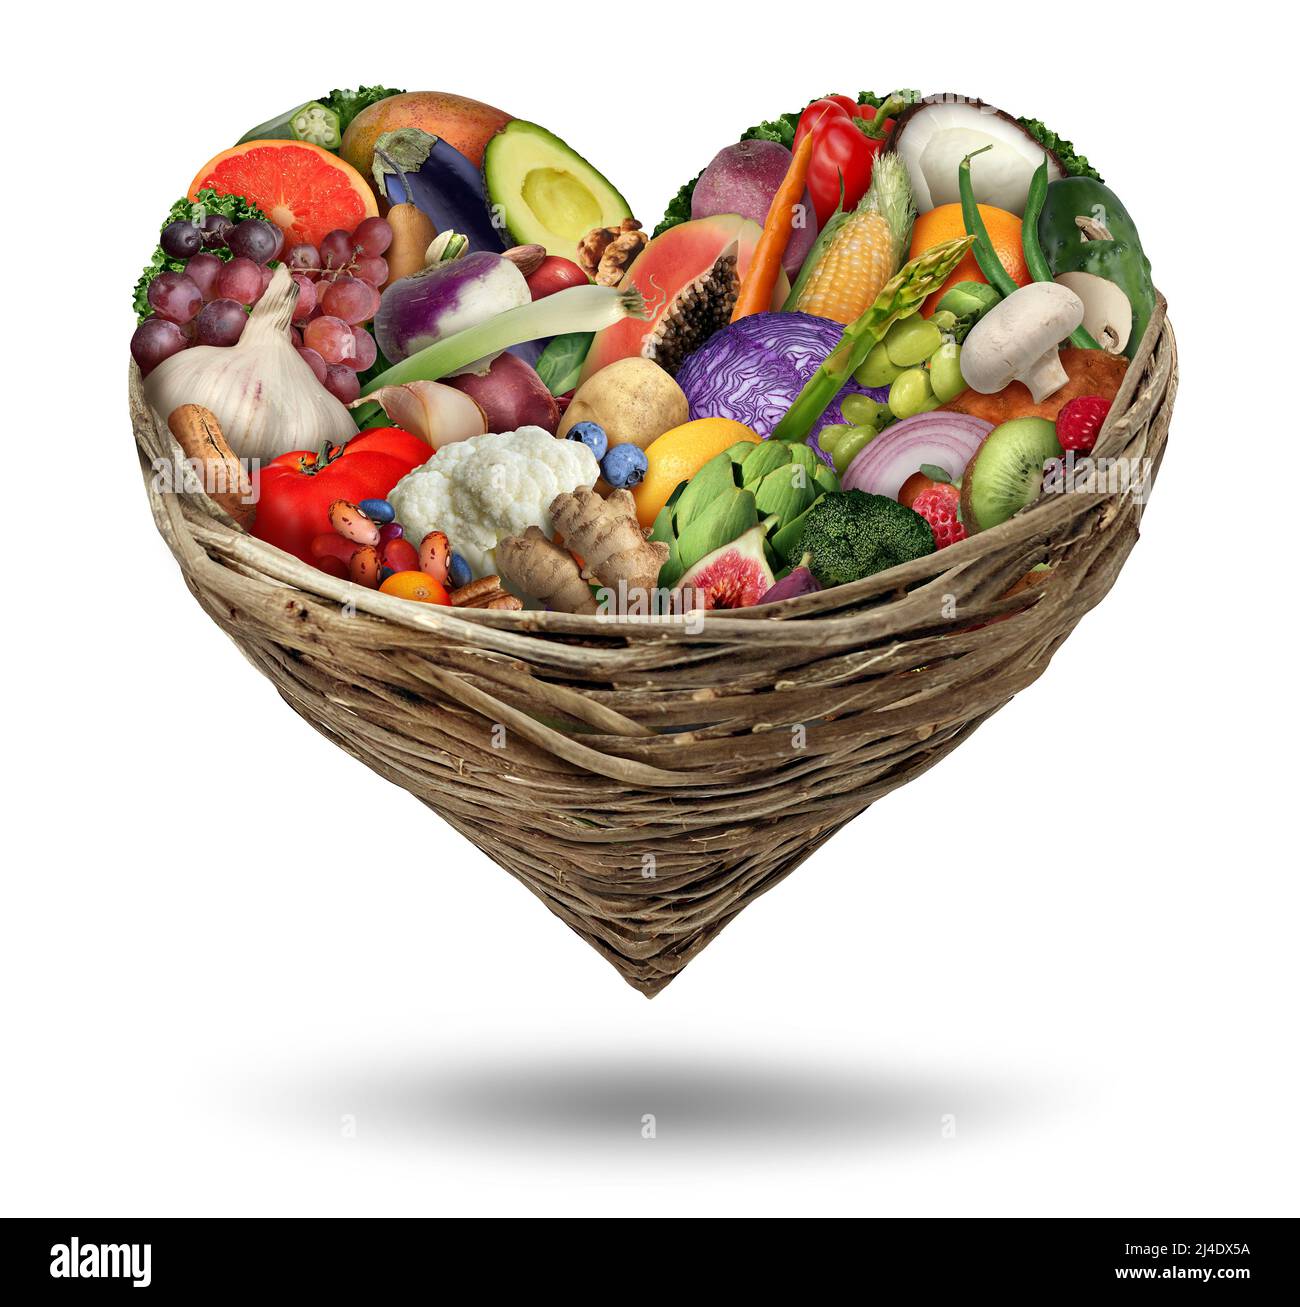 Frutta e verdura amore e il cuore simbolo di salute in un cestino di cornucopia come un alimento sano e frutta fresca matura e noci con fagioli come una dieta. Foto Stock